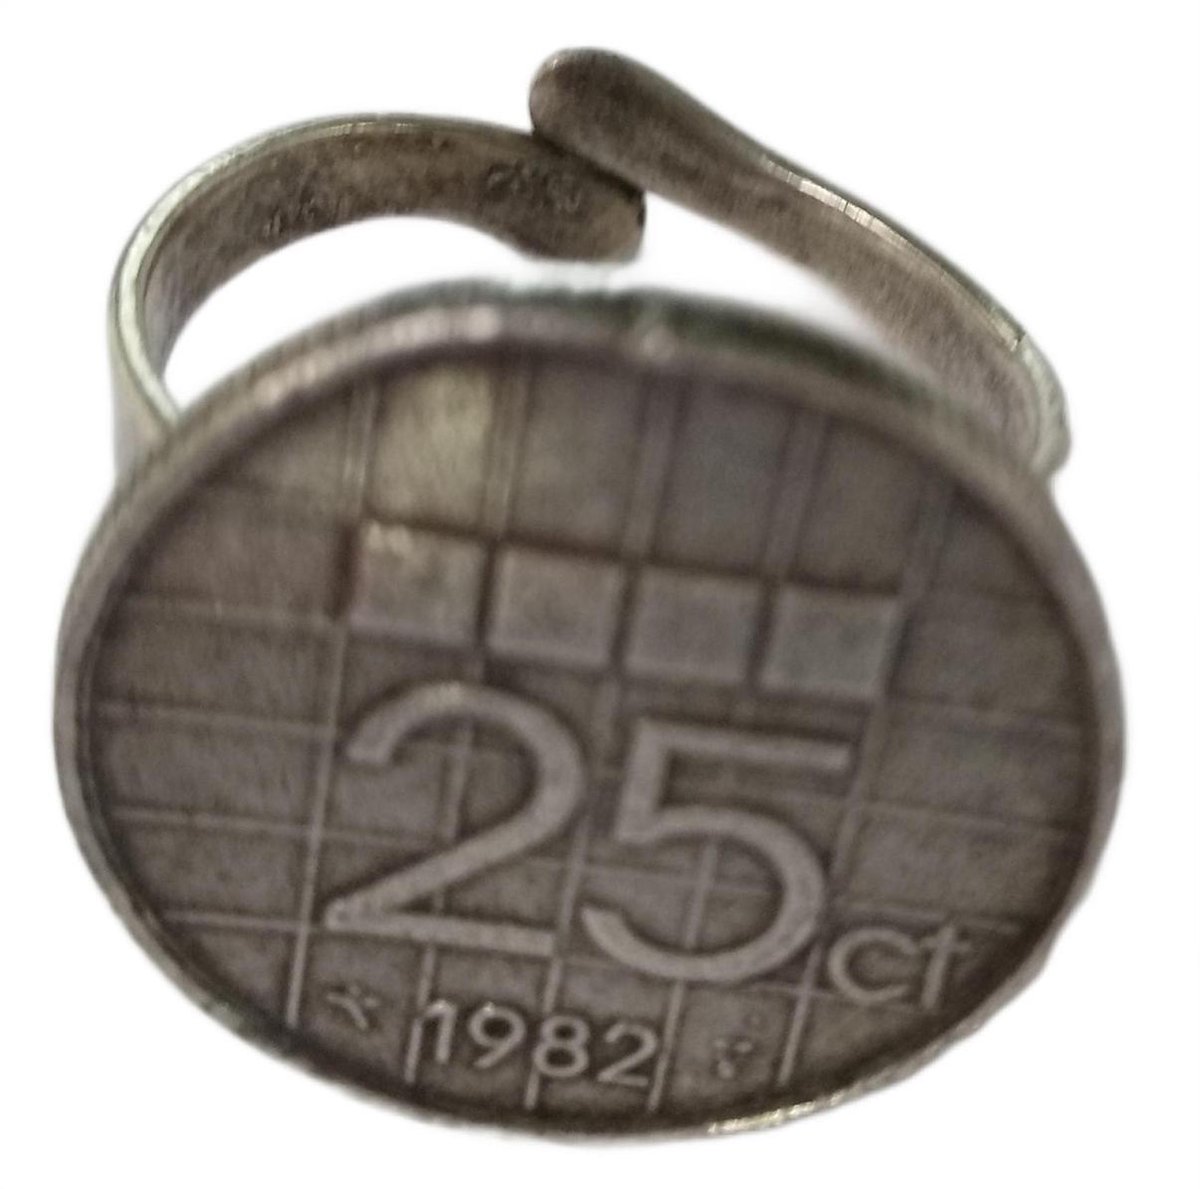 Zeuws meisje - Ring - jaartal 1982 - Cadeau geboortejaar jubileum - Gulden munt kwartje - verstelbaar een maat- zwaar verzilverd